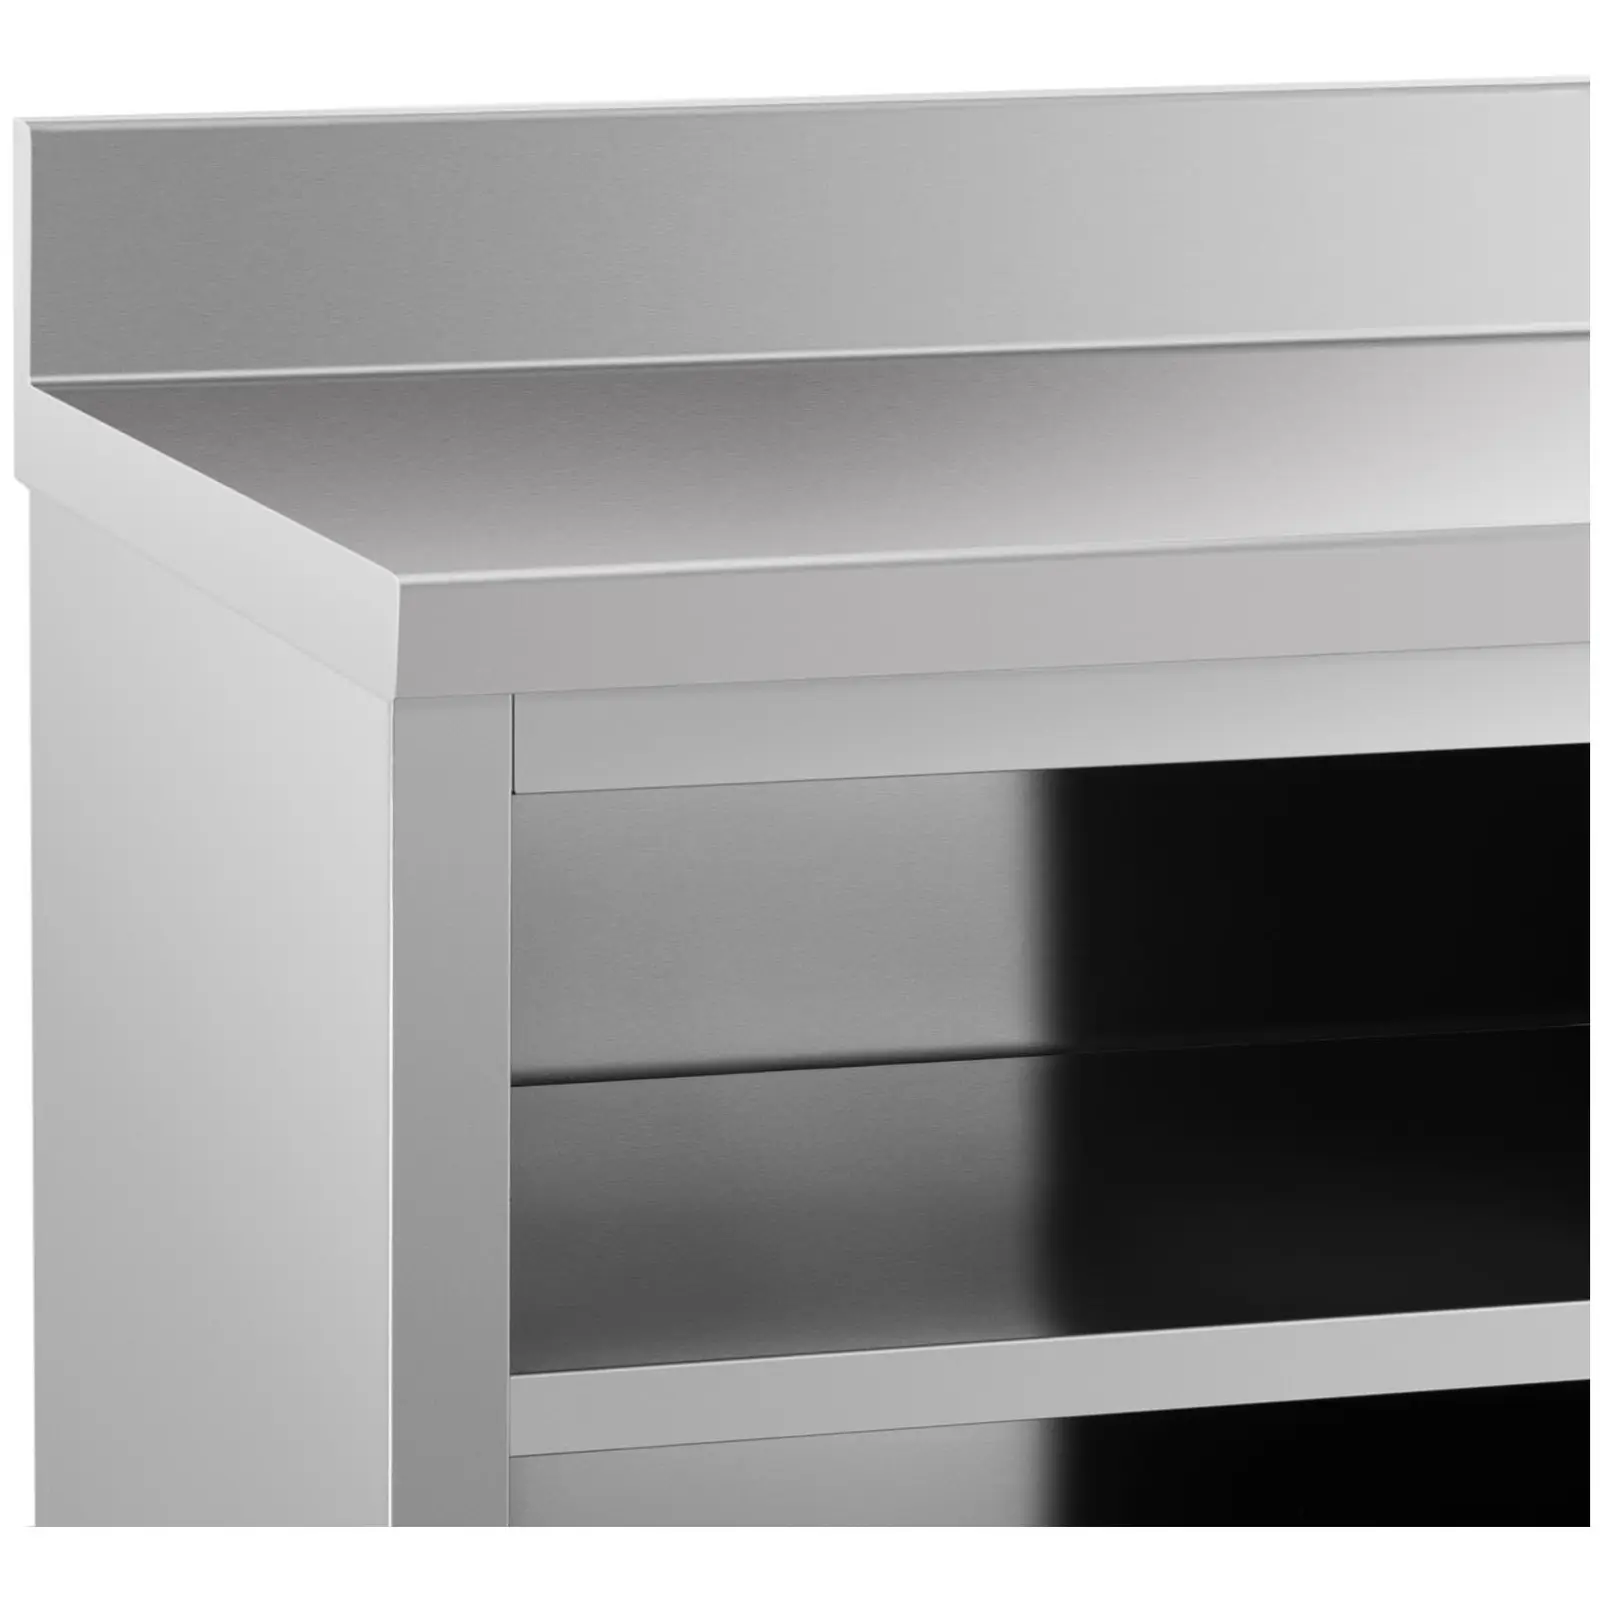 Mueble neutro - antisalpique - 180 x 70 cm - hasta 600 kg